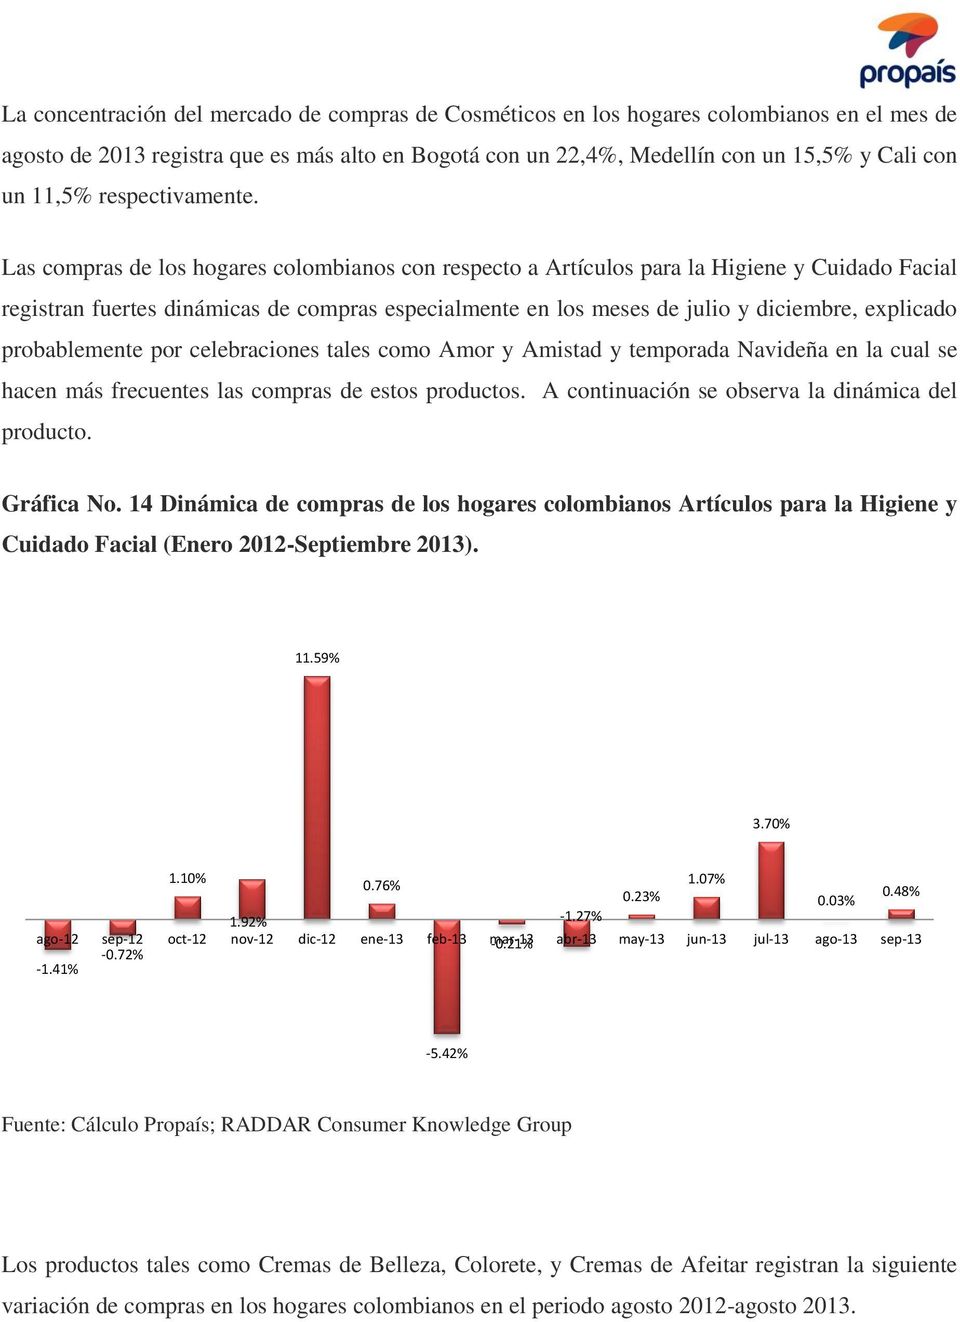 Las compras de los hogares colombianos con respecto a Artículos para la Higiene y Cuidado Facial registran fuertes dinámicas de compras especialmente en los meses de julio y diciembre, explicado